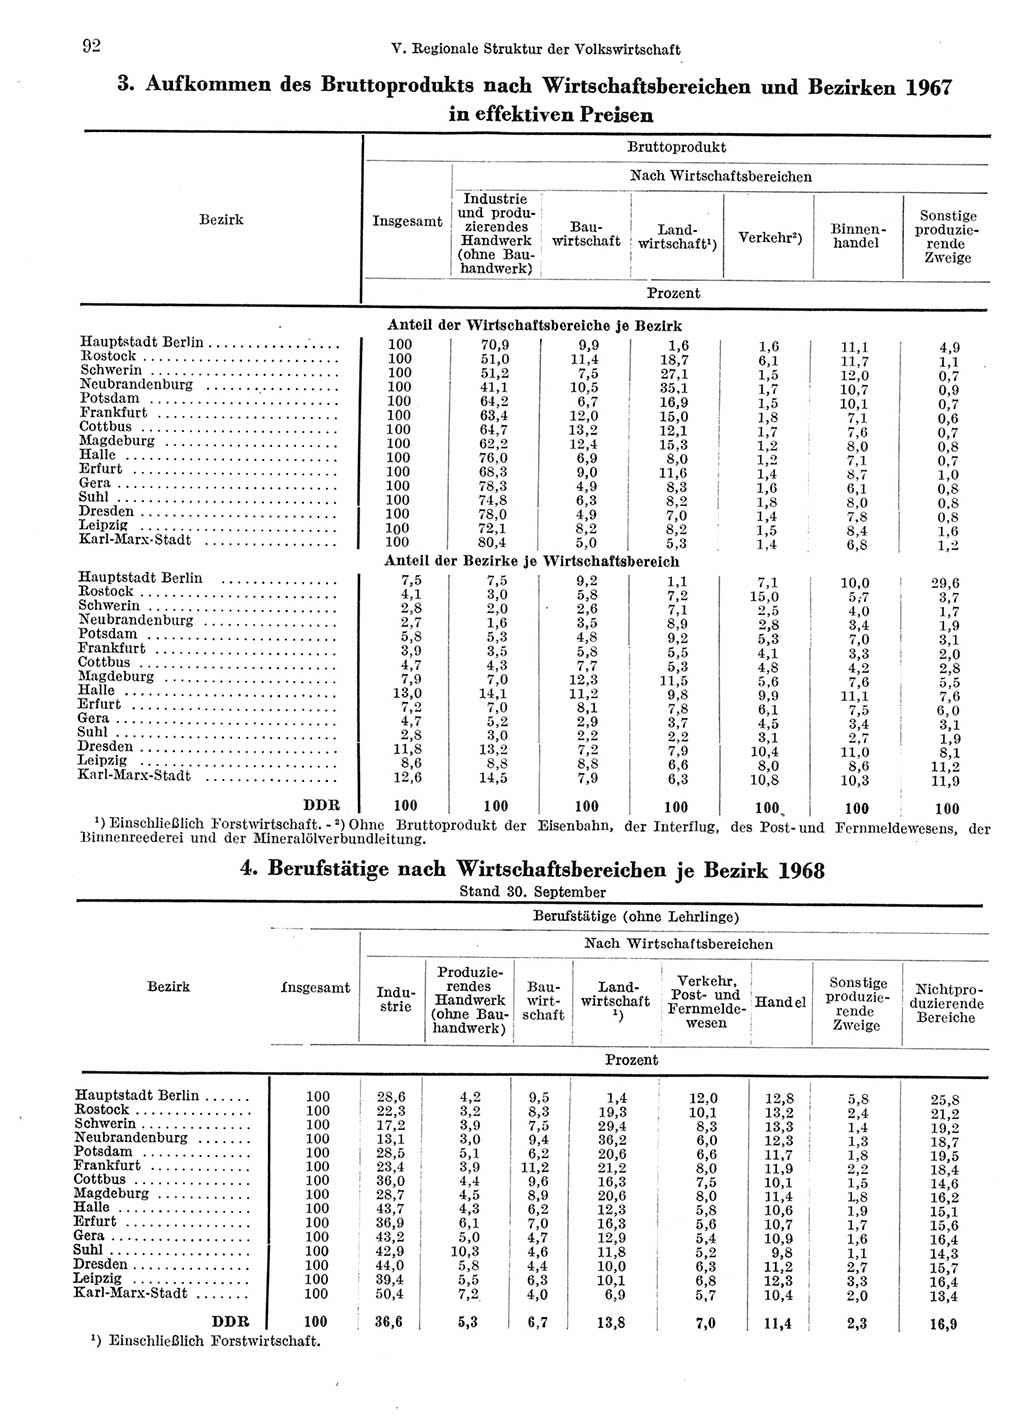 Statistisches Jahrbuch der Deutschen Demokratischen Republik (DDR) 1969, Seite 92 (Stat. Jb. DDR 1969, S. 92)